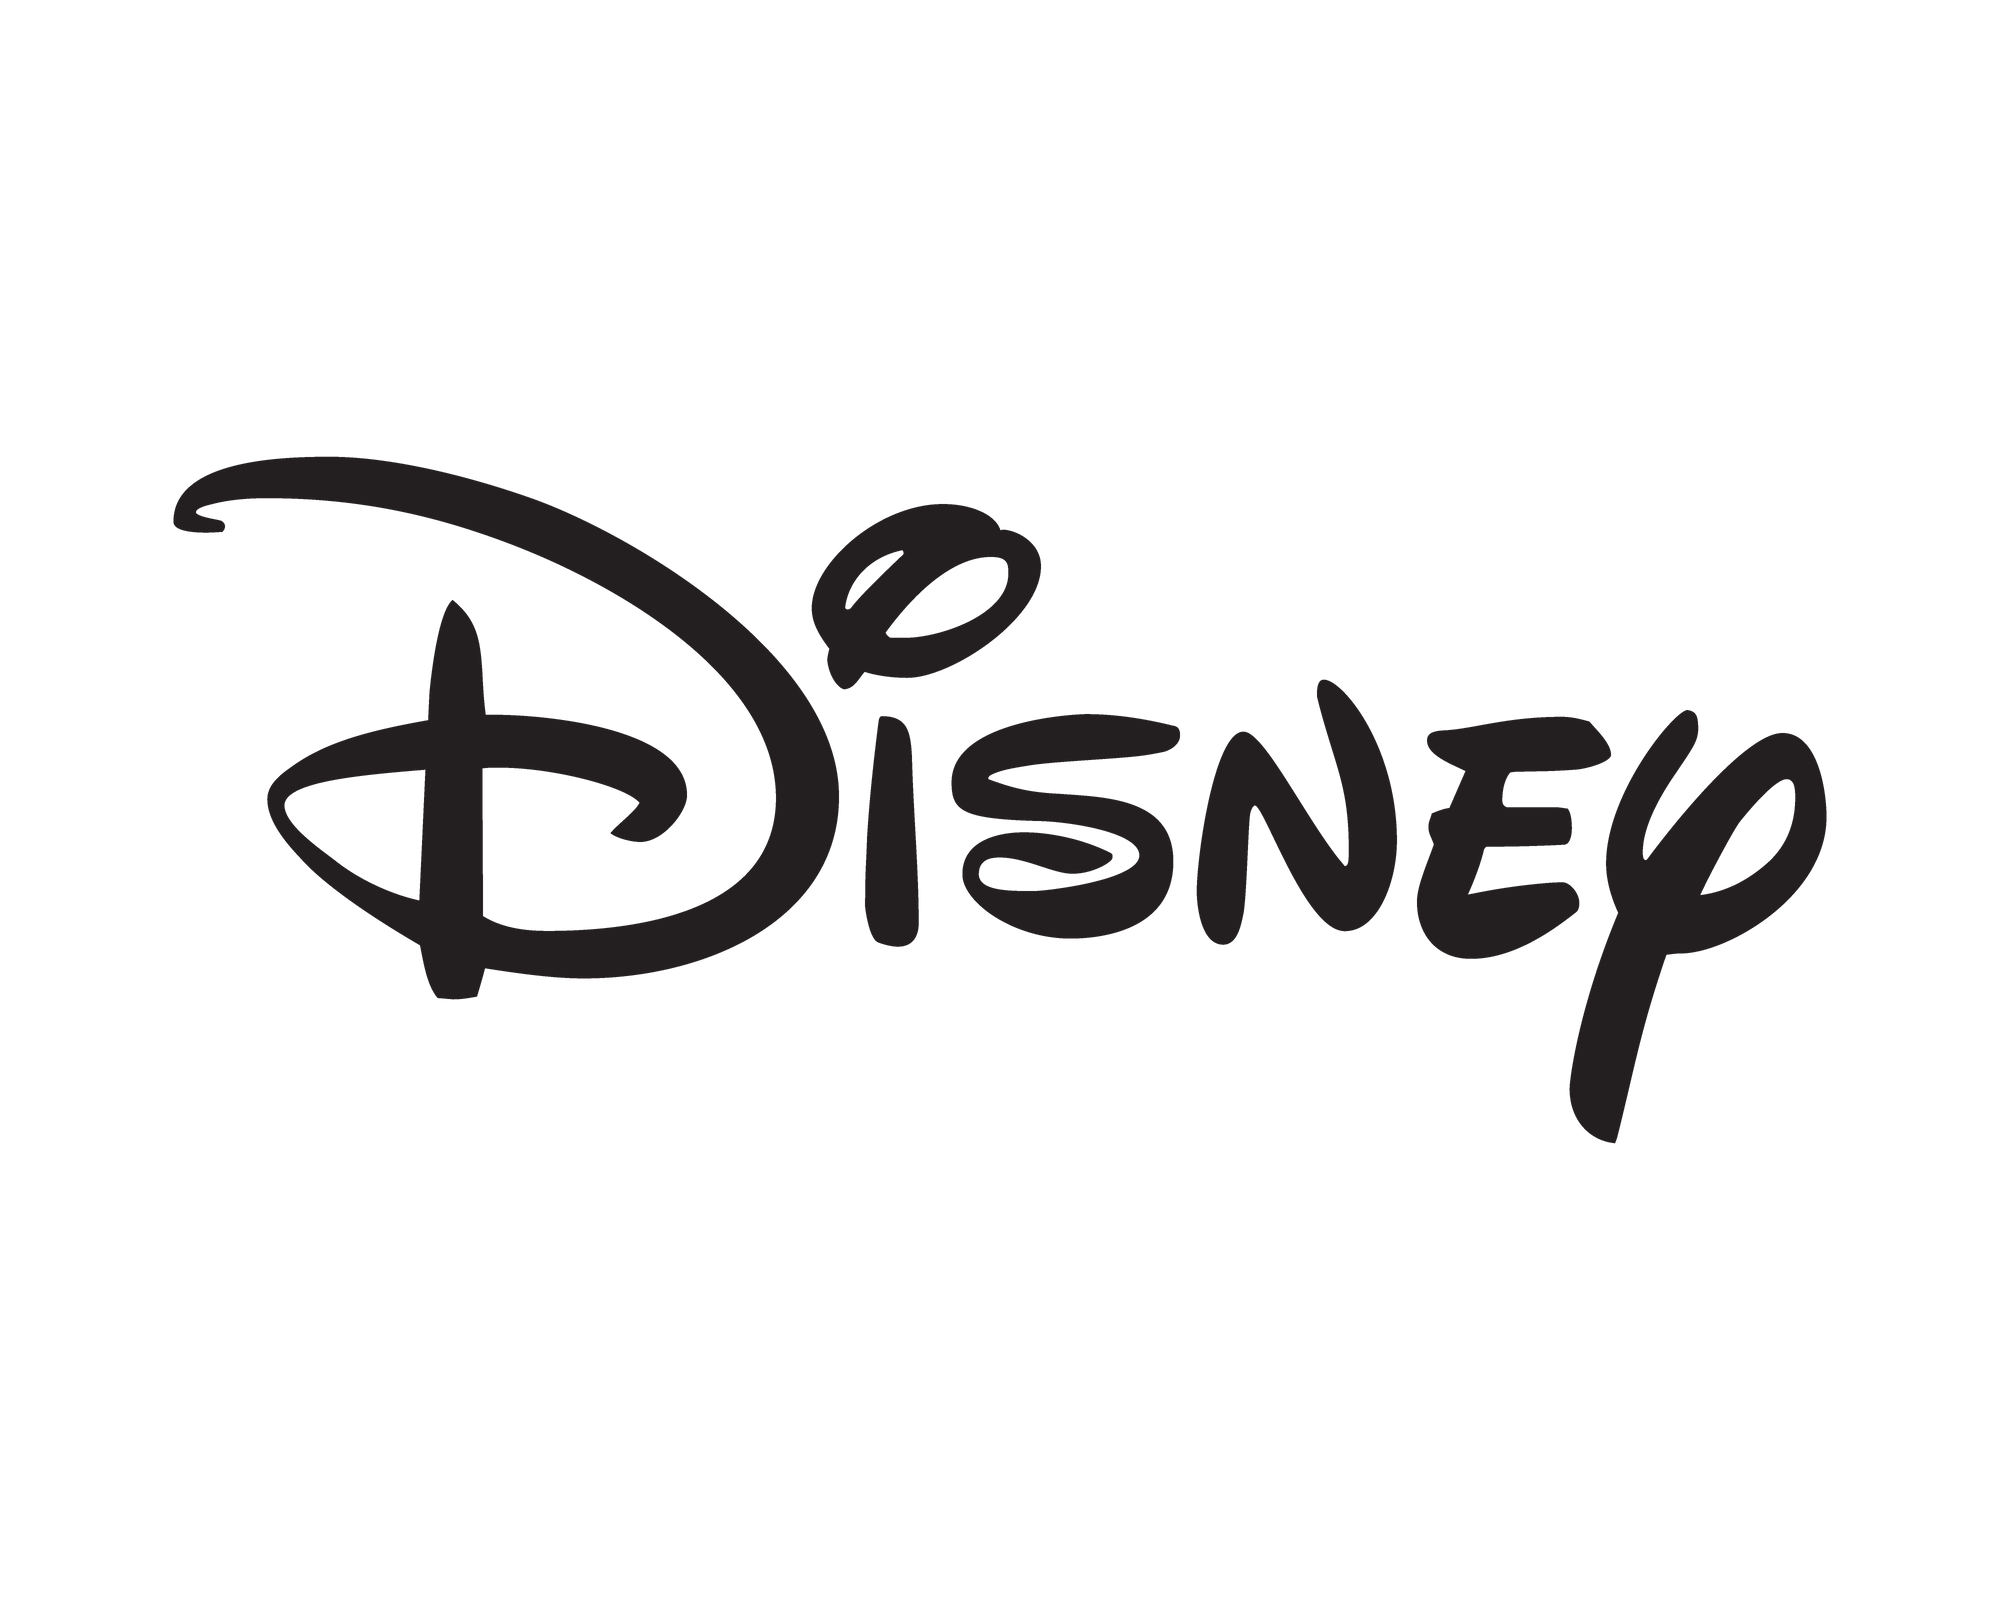 Image showing Disney logo